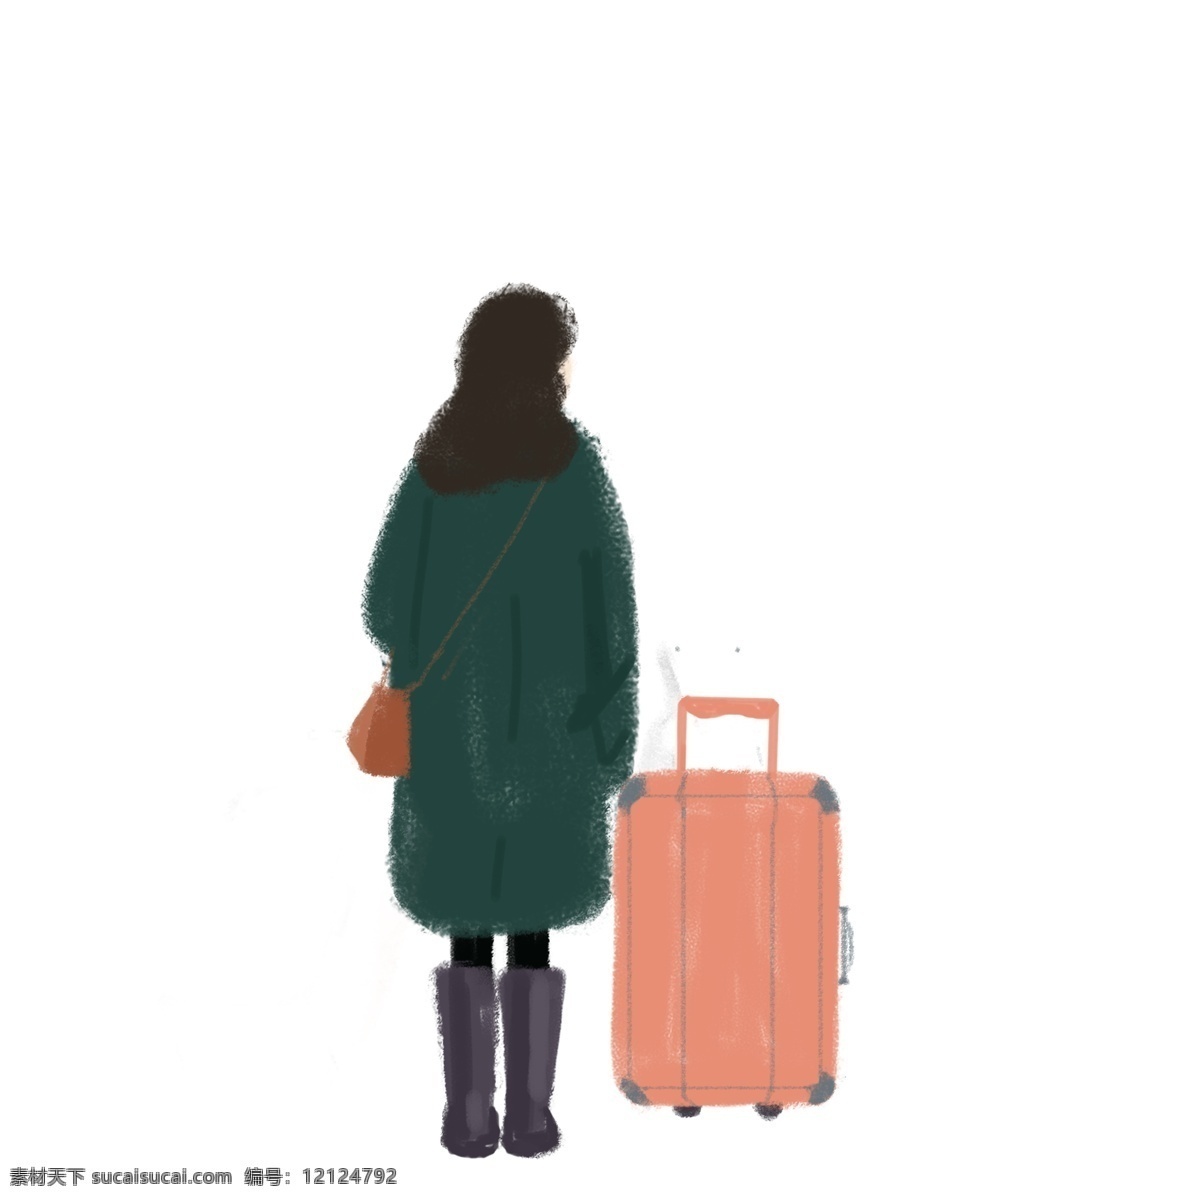 女孩 提 行李箱 免 抠 图 旅行 旅行装备 动漫人物 卡通动漫 小女孩 红色行李箱 箱子 免抠图